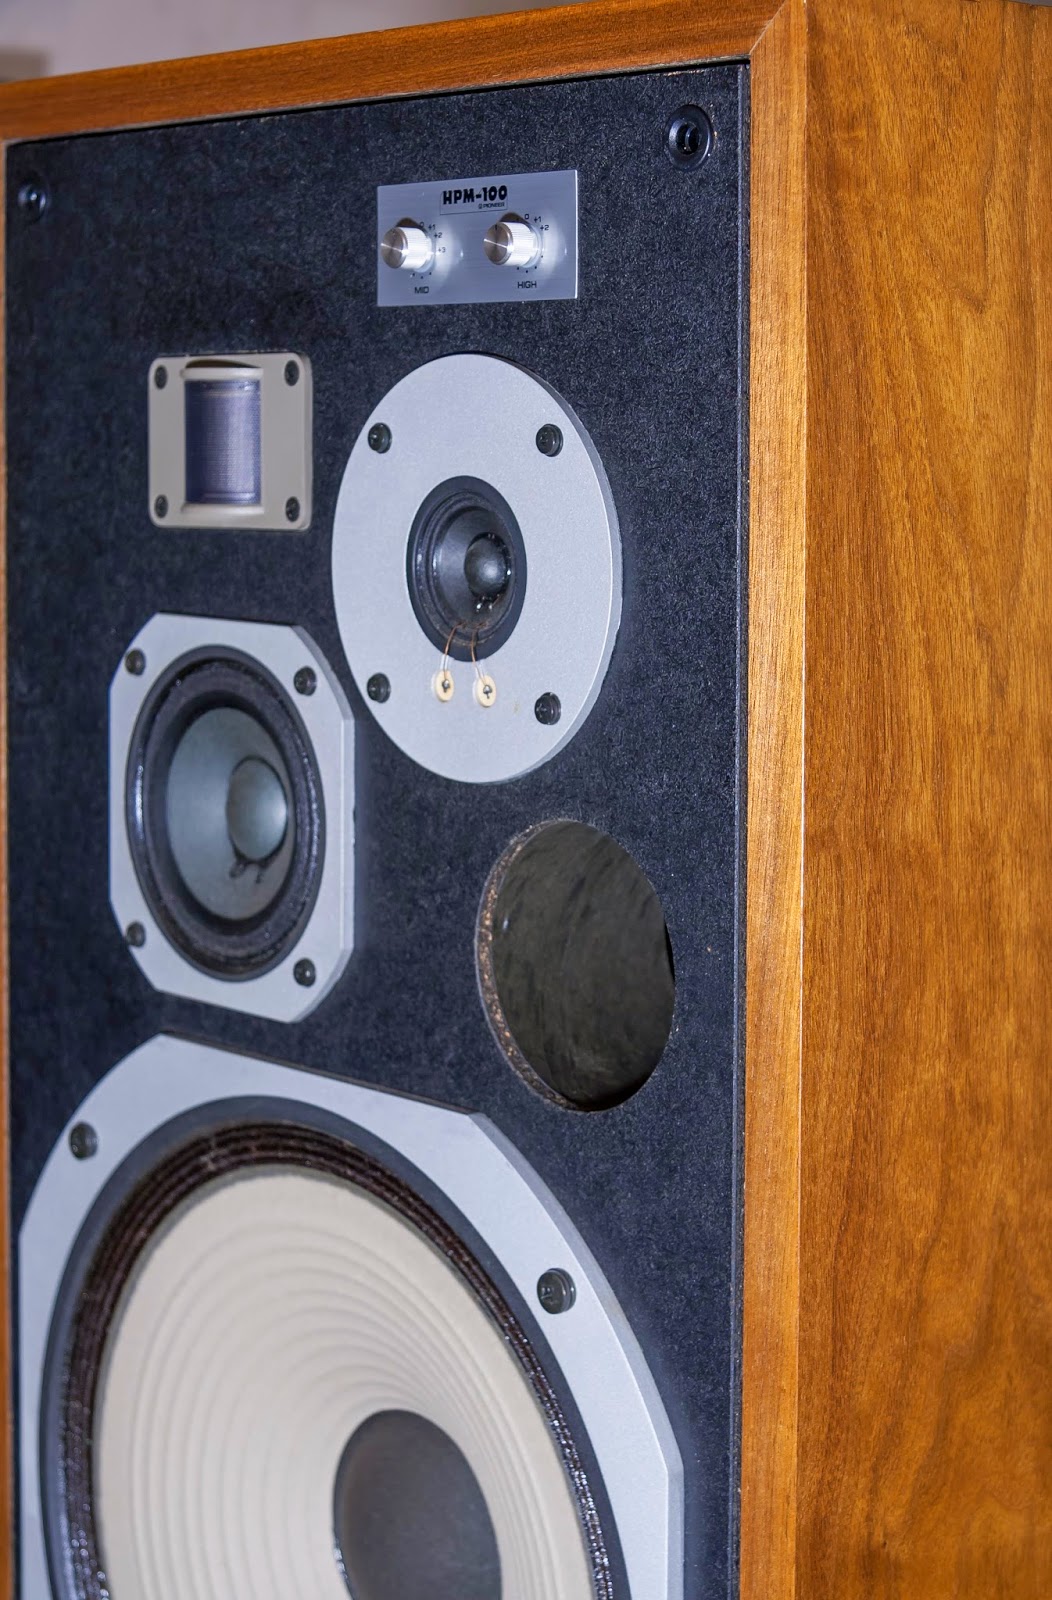 Golden Age Of Audio Pioneer Hpm 100 Vintage Speakers